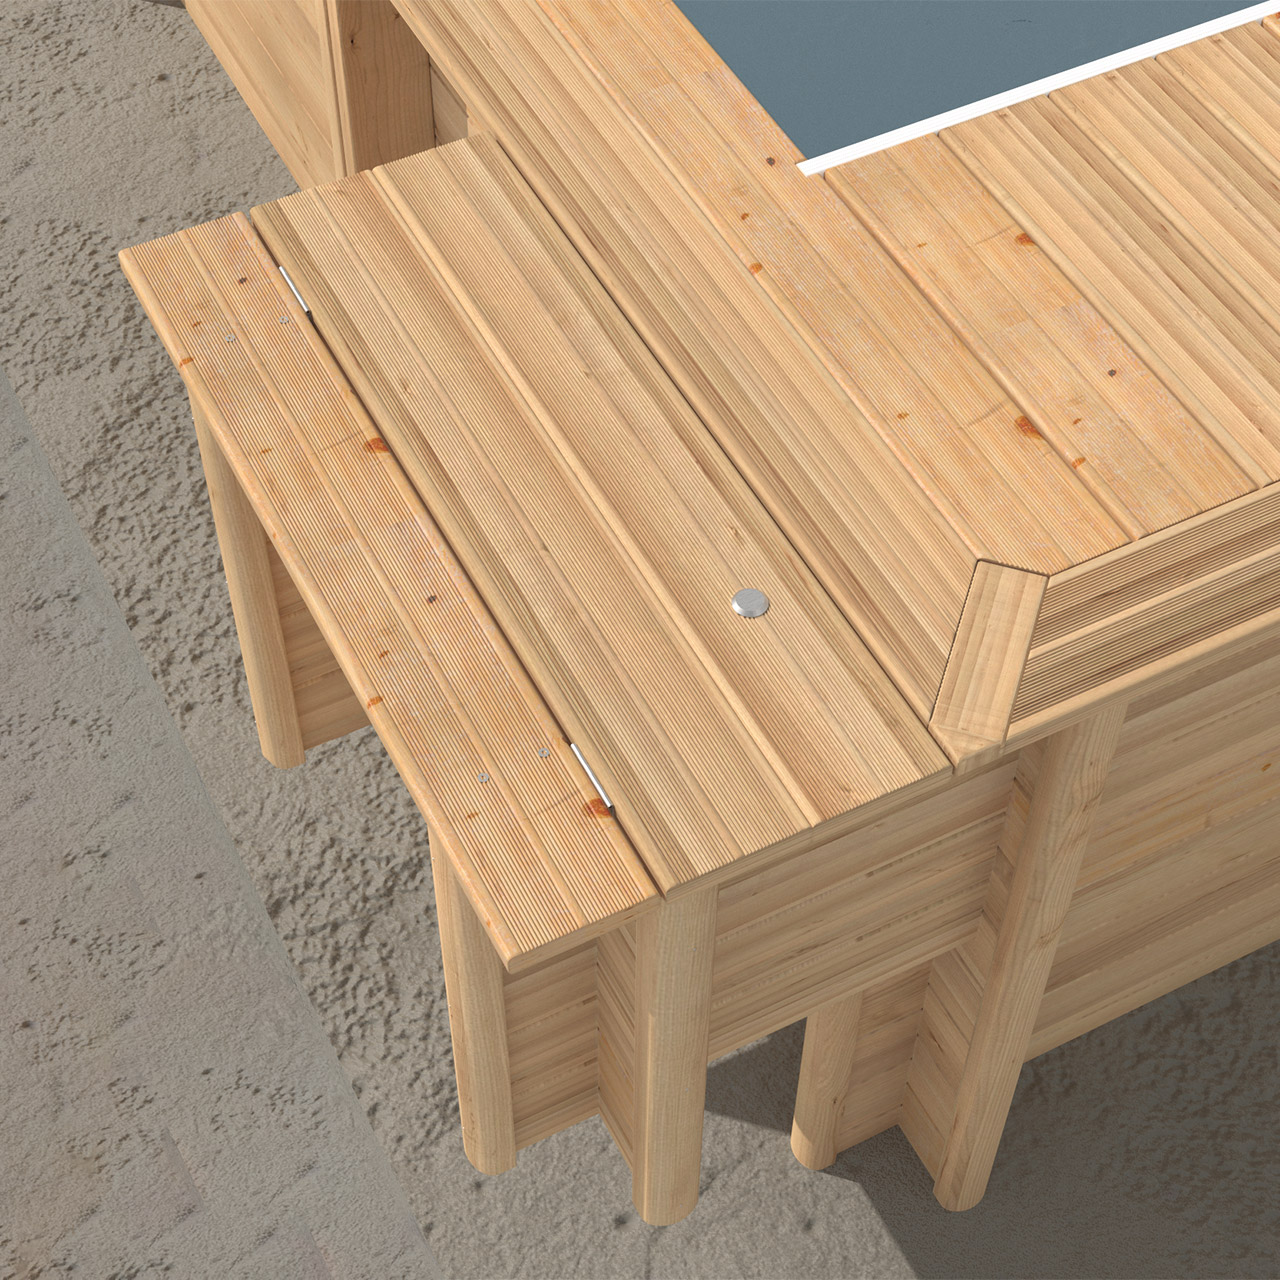 Holzschacht für eingebaute Urban Pool XL 6,5 x 3,5